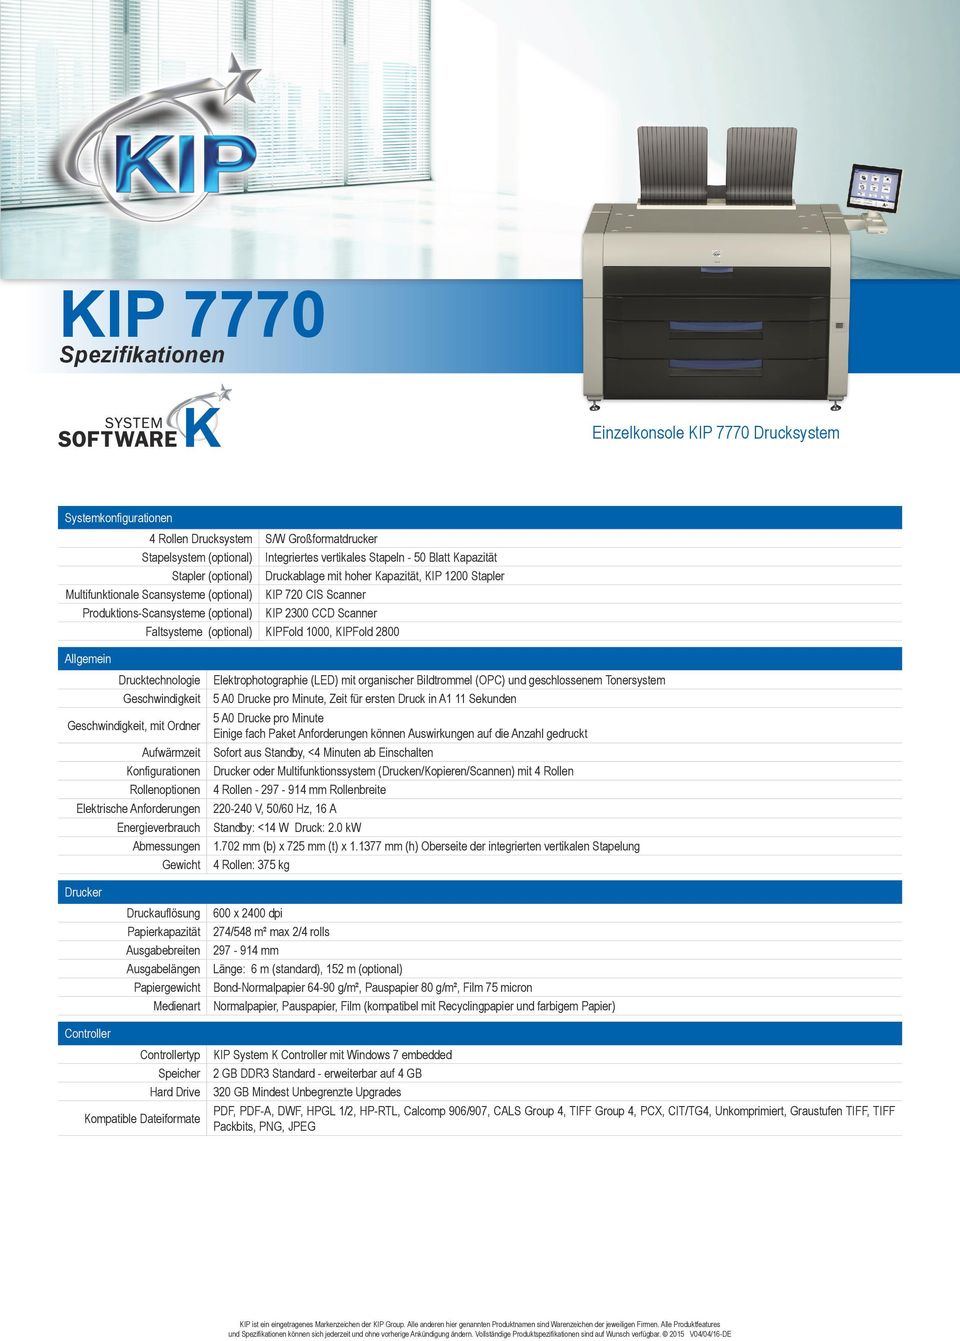 KIPFold 1000, KIPFold 2800 Allgemein Drucktechnologie Geschwindigkeit Geschwindigkeit, mit Ordner Aufwärmzeit Konfigurationen Rollenoptionen Elektrophotographie (LED) mit organischer Bildtrommel